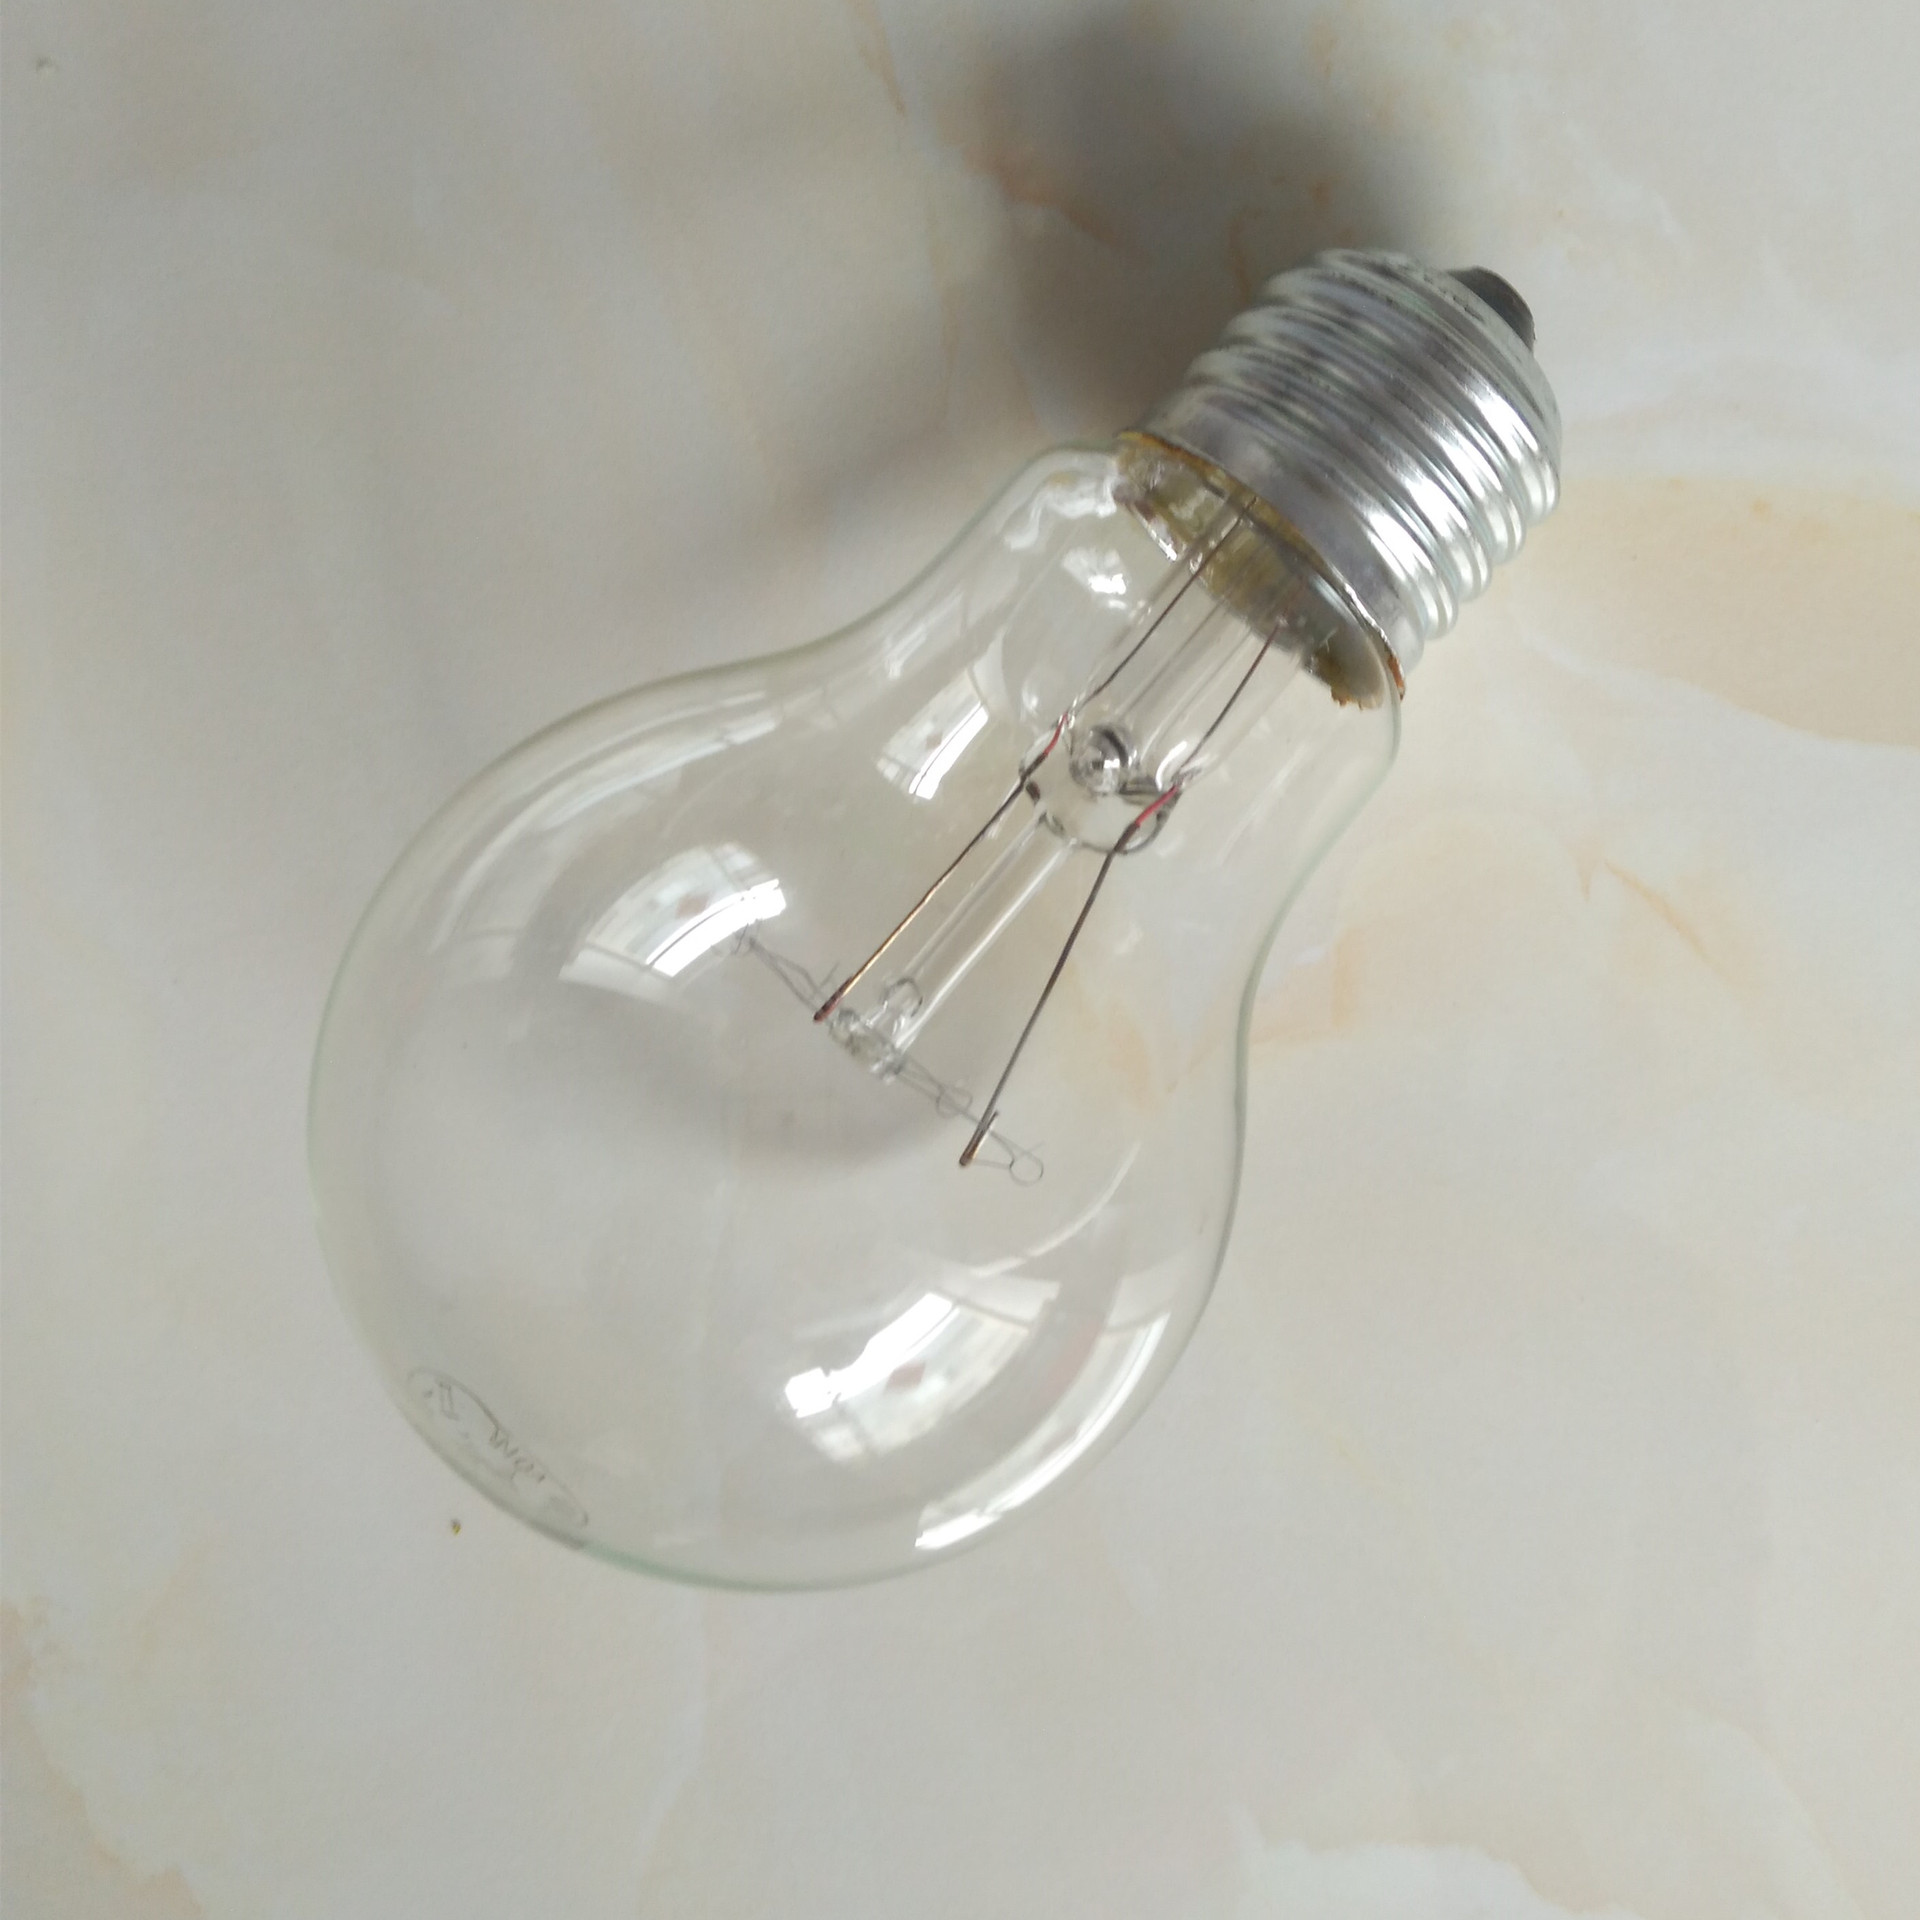 led灯泡尺寸—led灯泡的尺寸规格有哪些 - 舒适100网